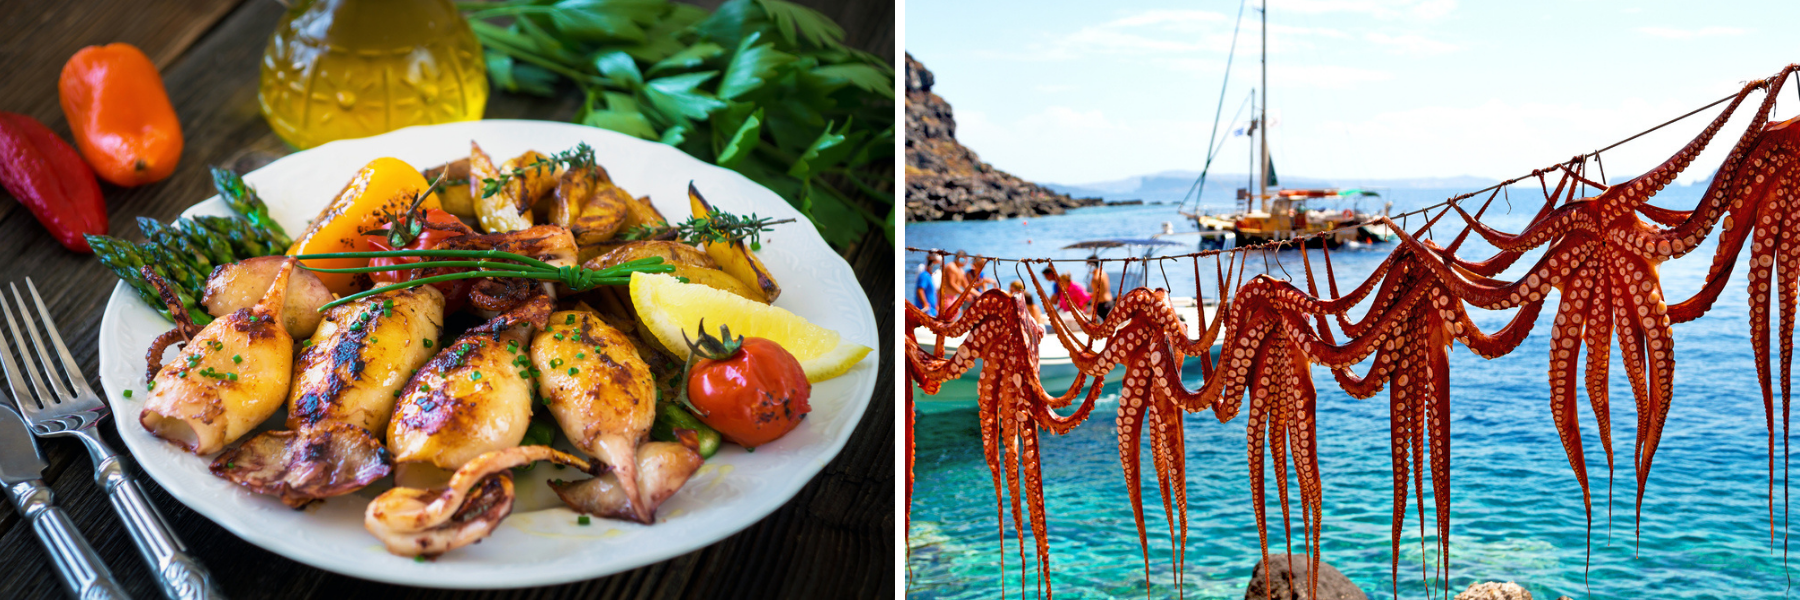 Mořské plody dominují jak chorvatské, tak řecké kuchyni.